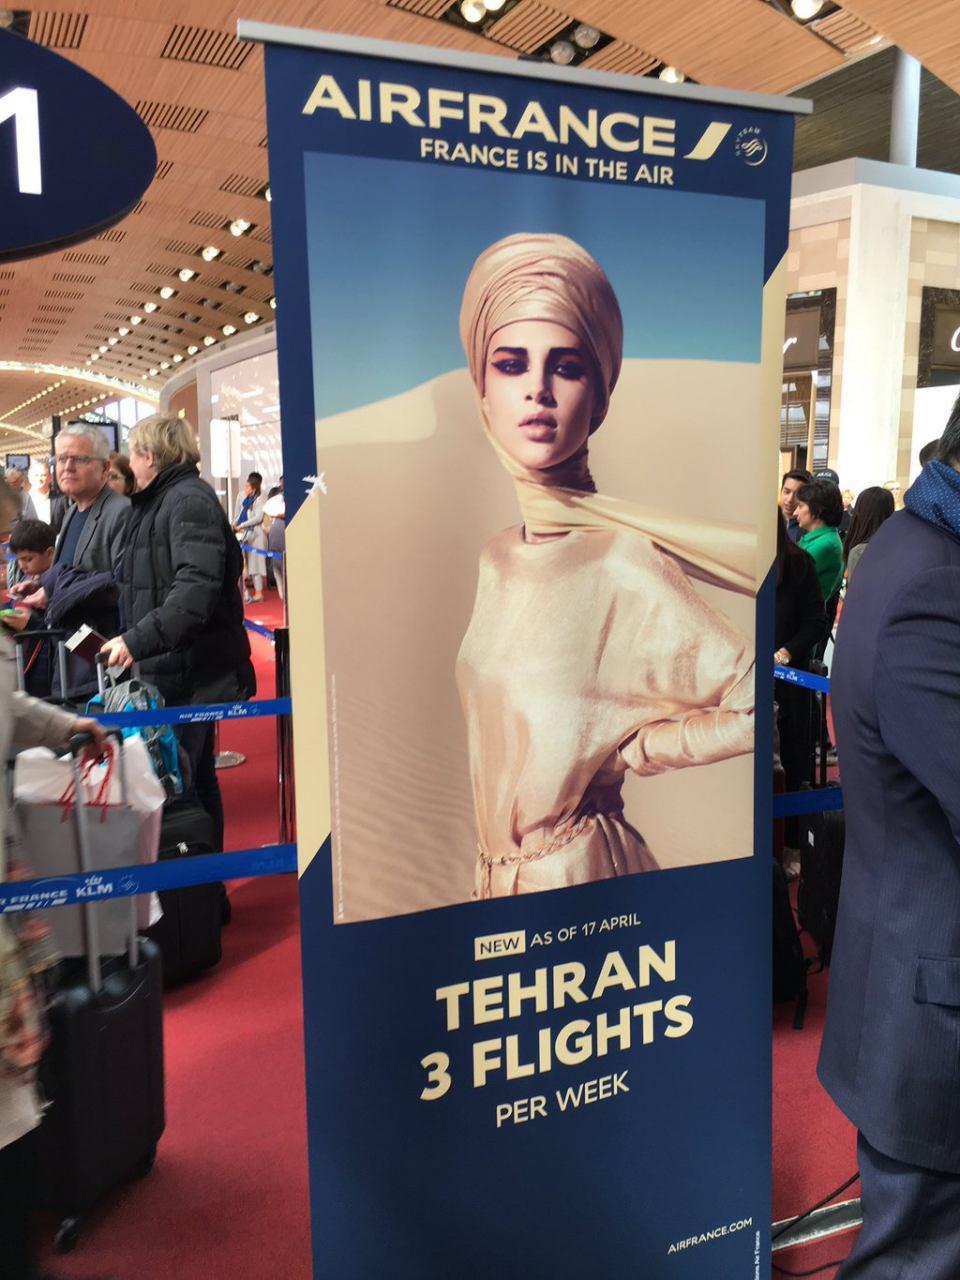 آگهی پرواز تهران و پاریس با تصویر زنی با حجاب (تصویر)